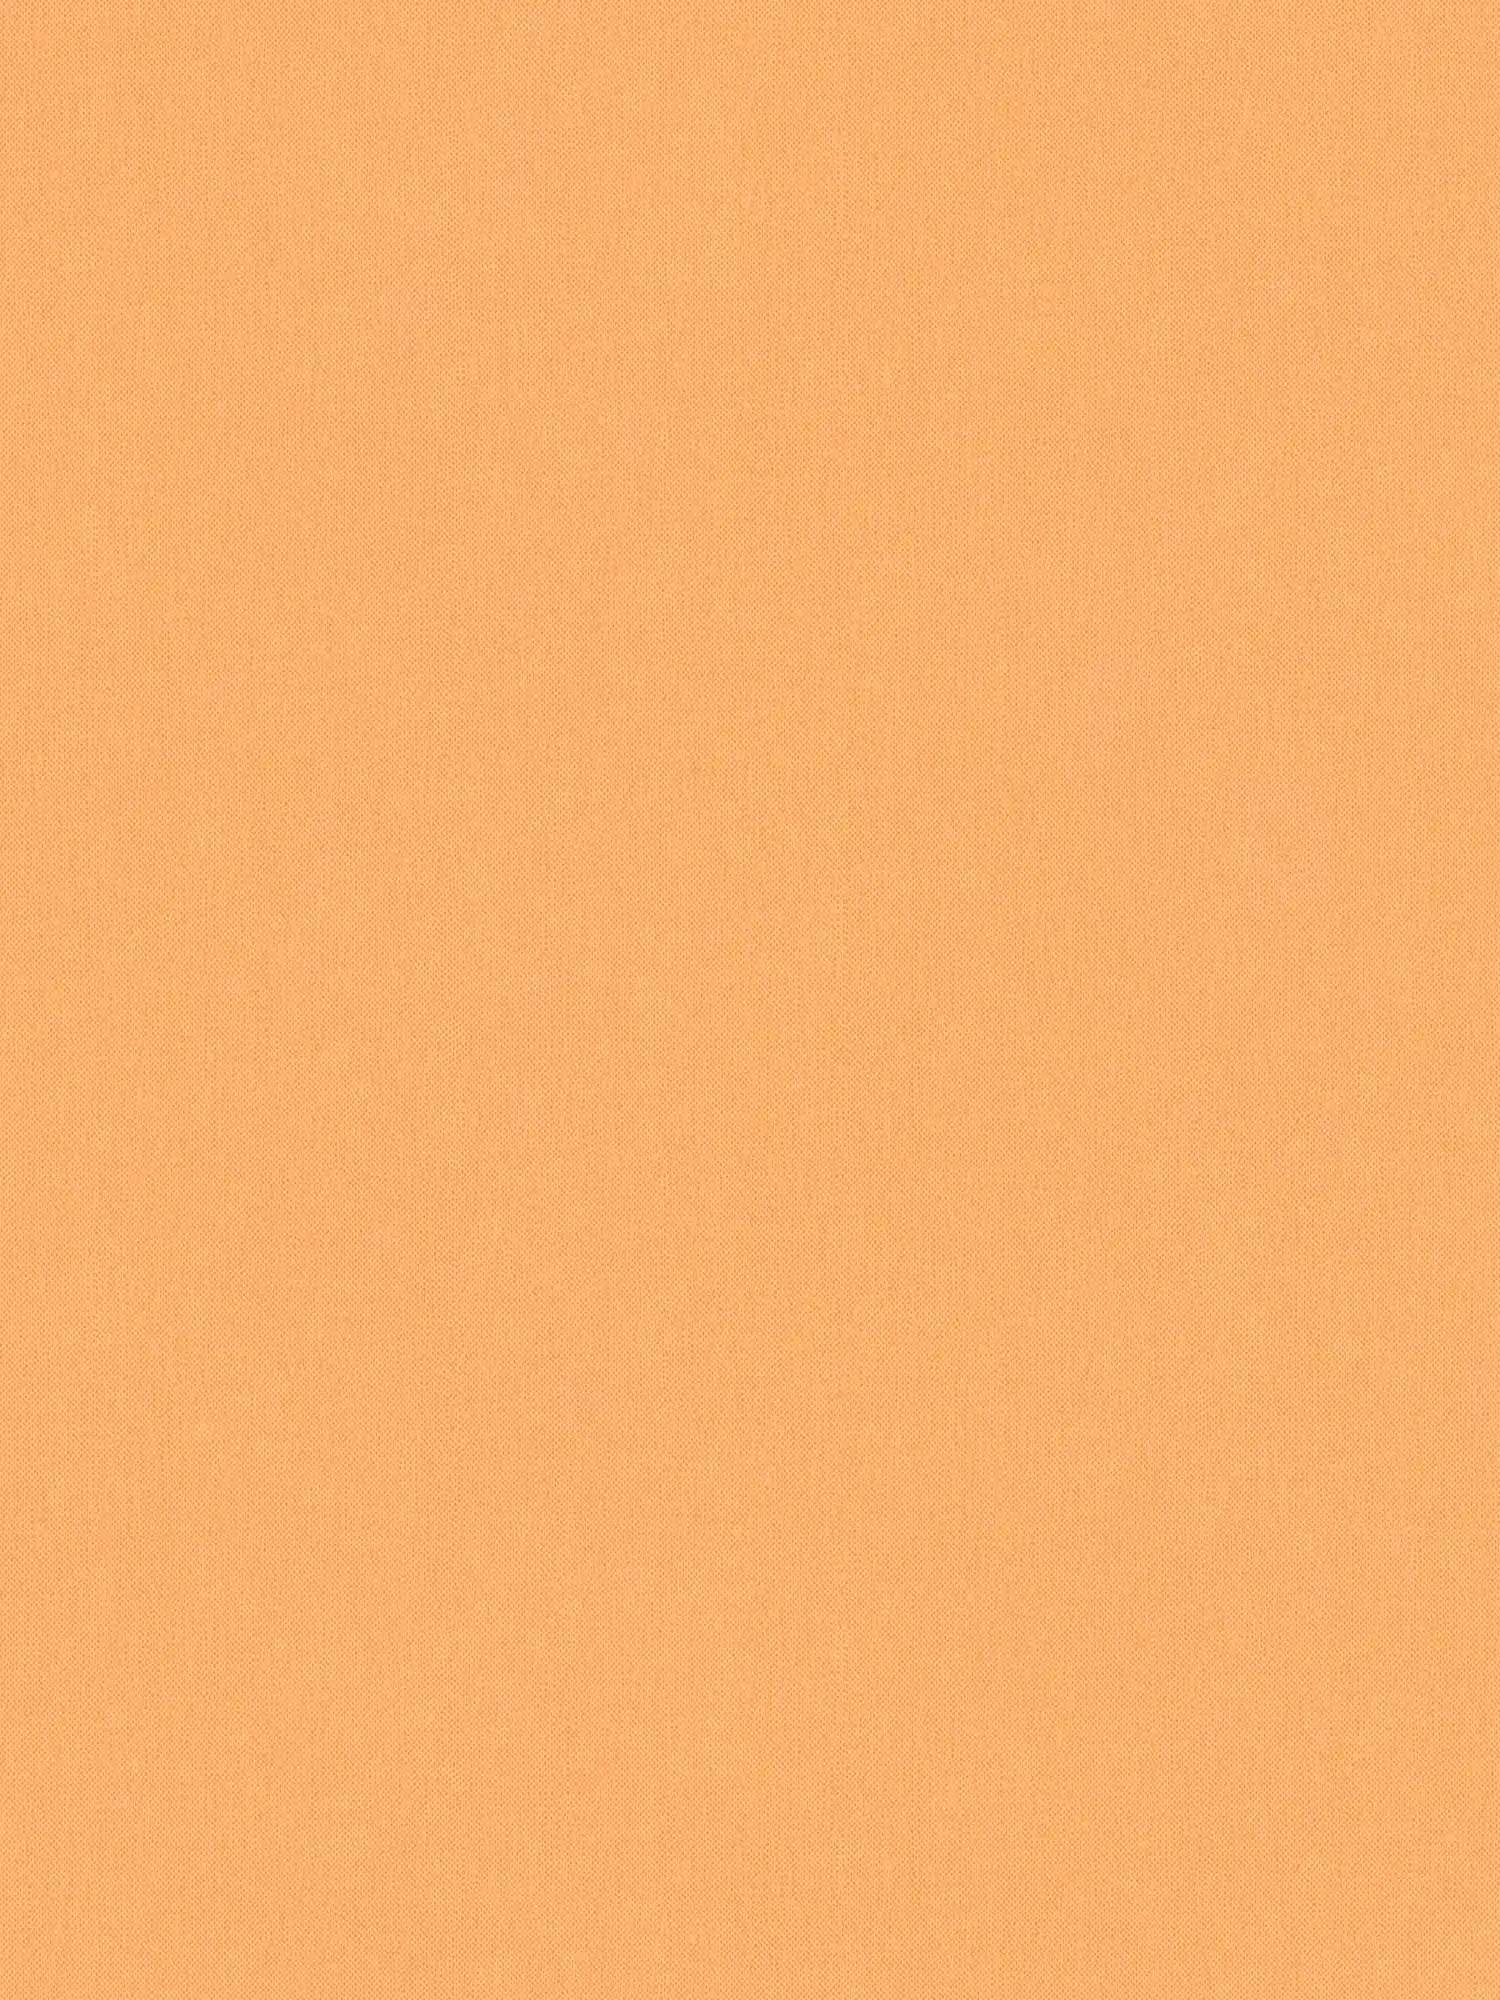 Wallpaper orange pastel & matte with linen look texture - orange
